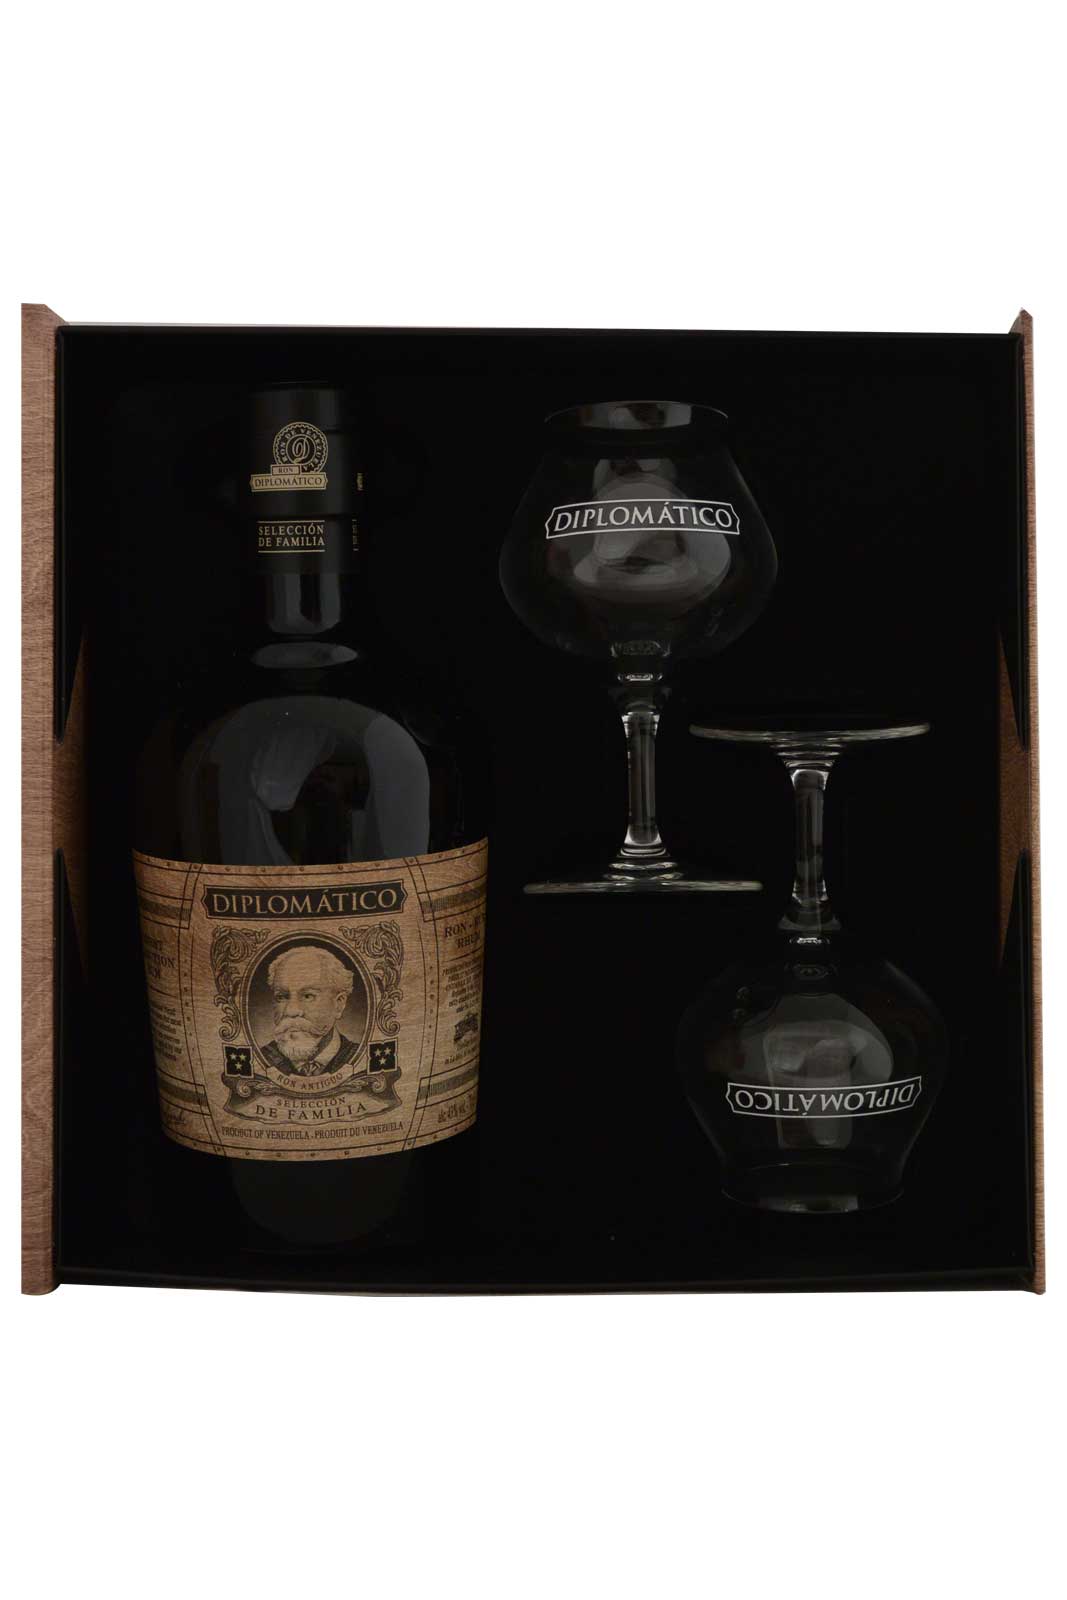 Diplomatico Rum Giftbox + 2 Glasses - Selection de Familia